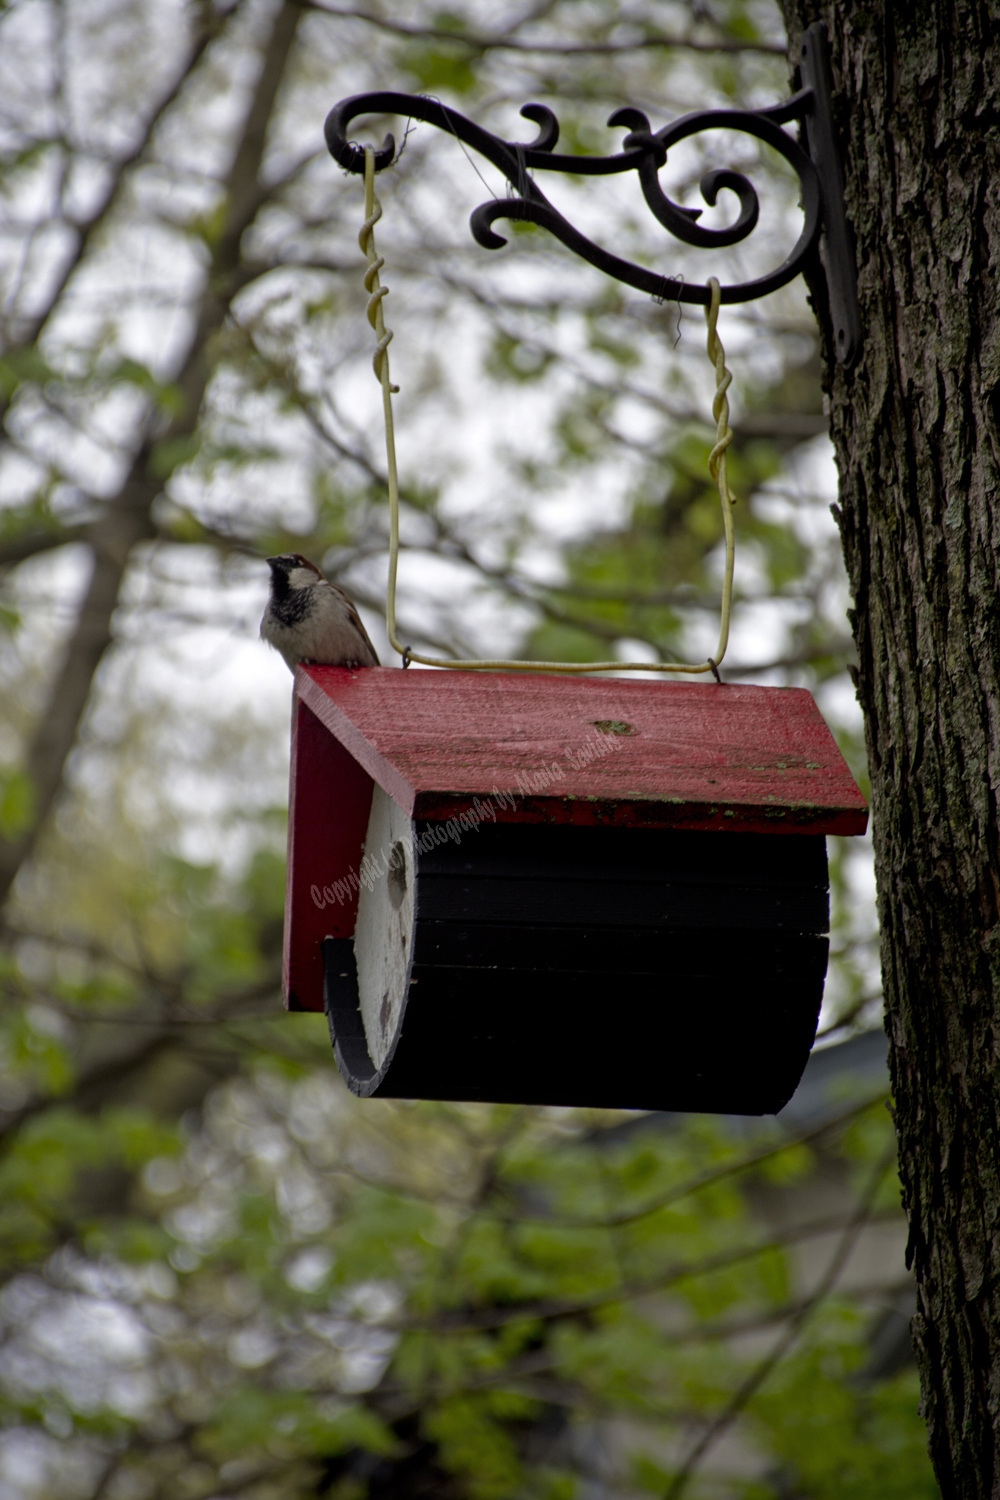 House Sparrow on his birdhouse, Maplewood, NJ 2017